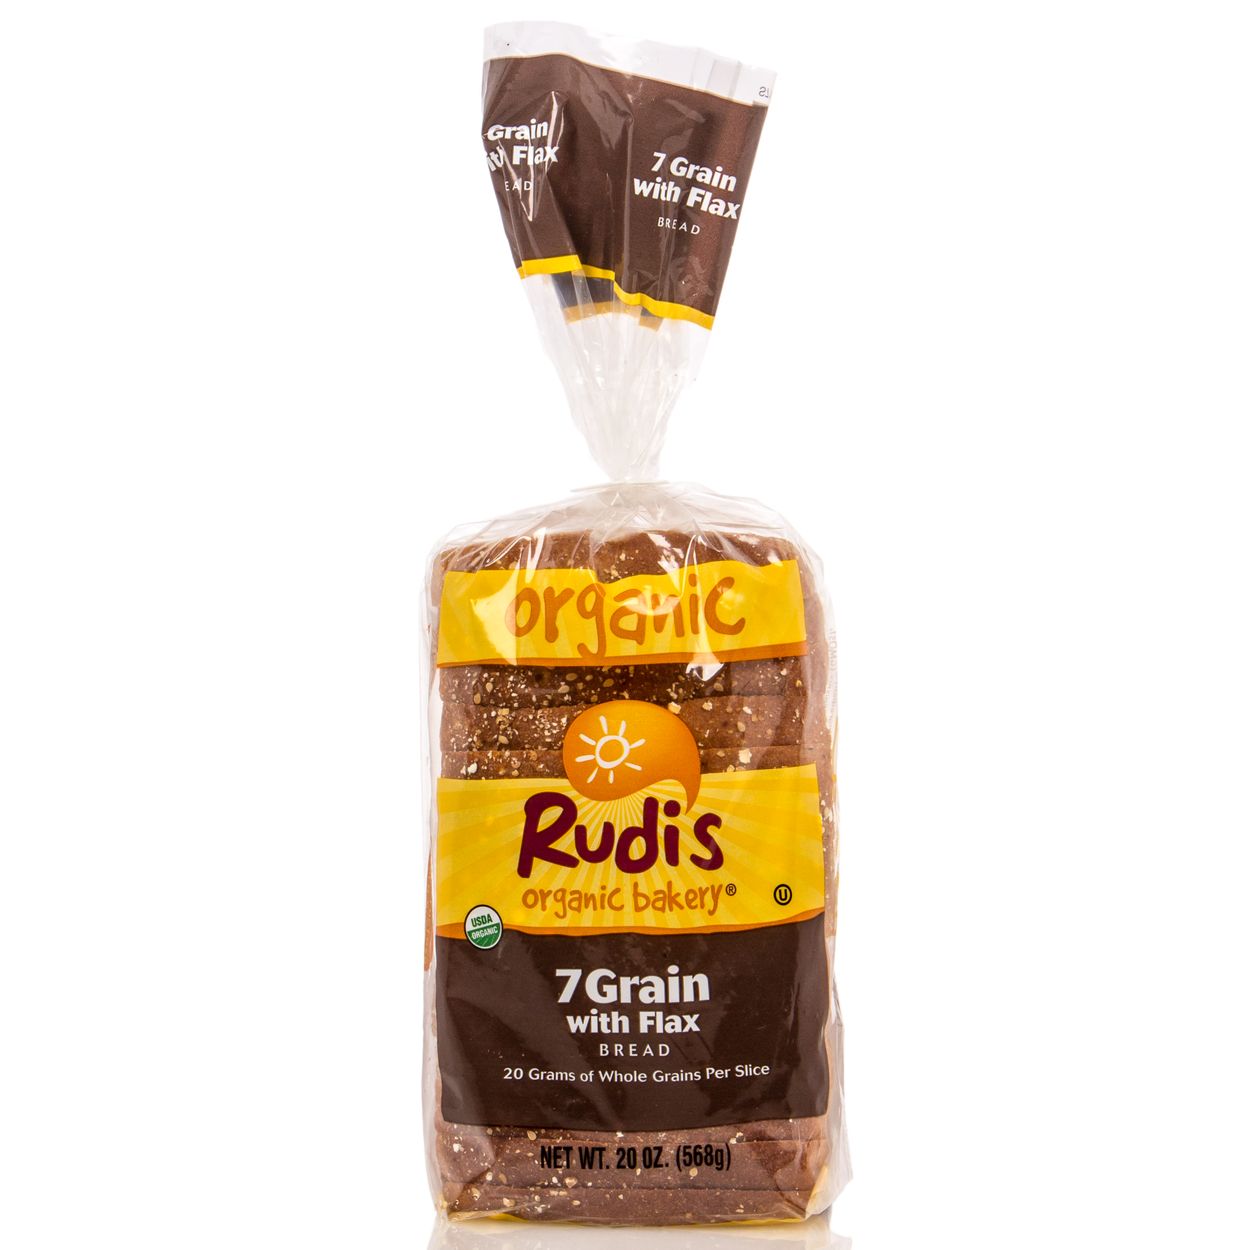 RUDI'S BAKERY - COUNTRY MORNING 7 GRAIN /W FLAX BREAD - DAIRY FREE - NON GMO - 22oz